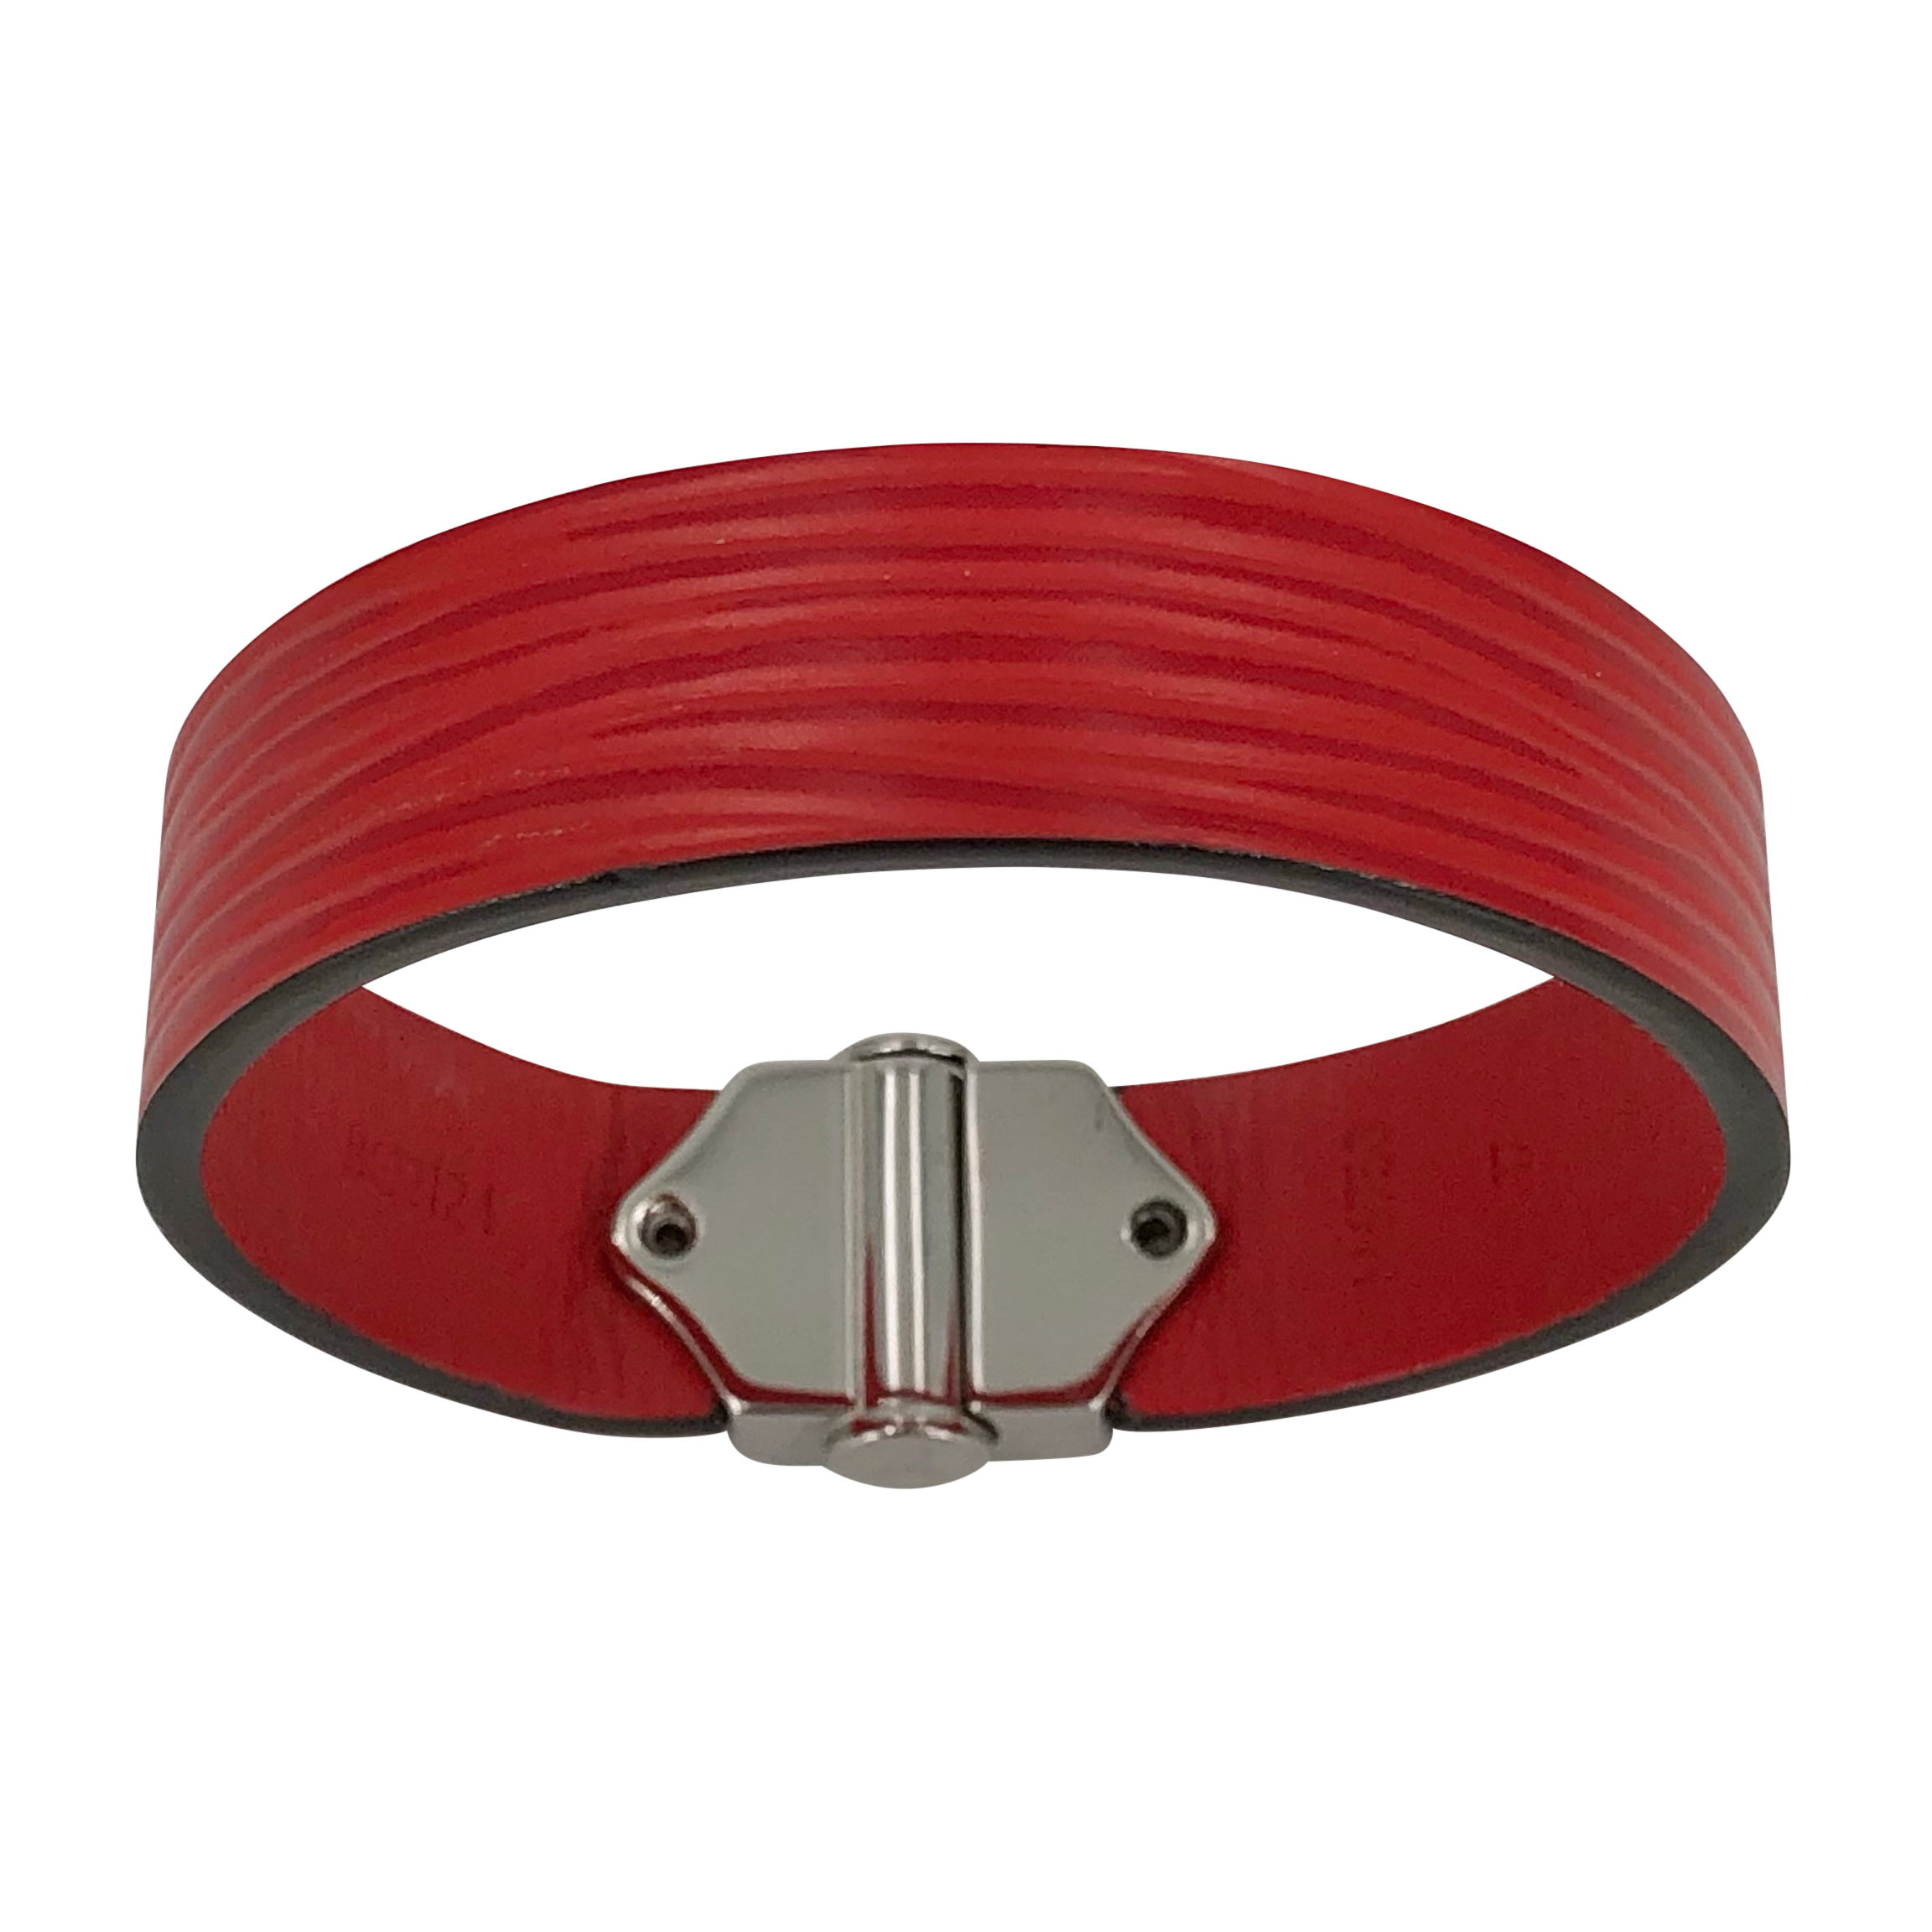 Louis Vuitton Champs Elysées Bracelet Red Leather. Size NA